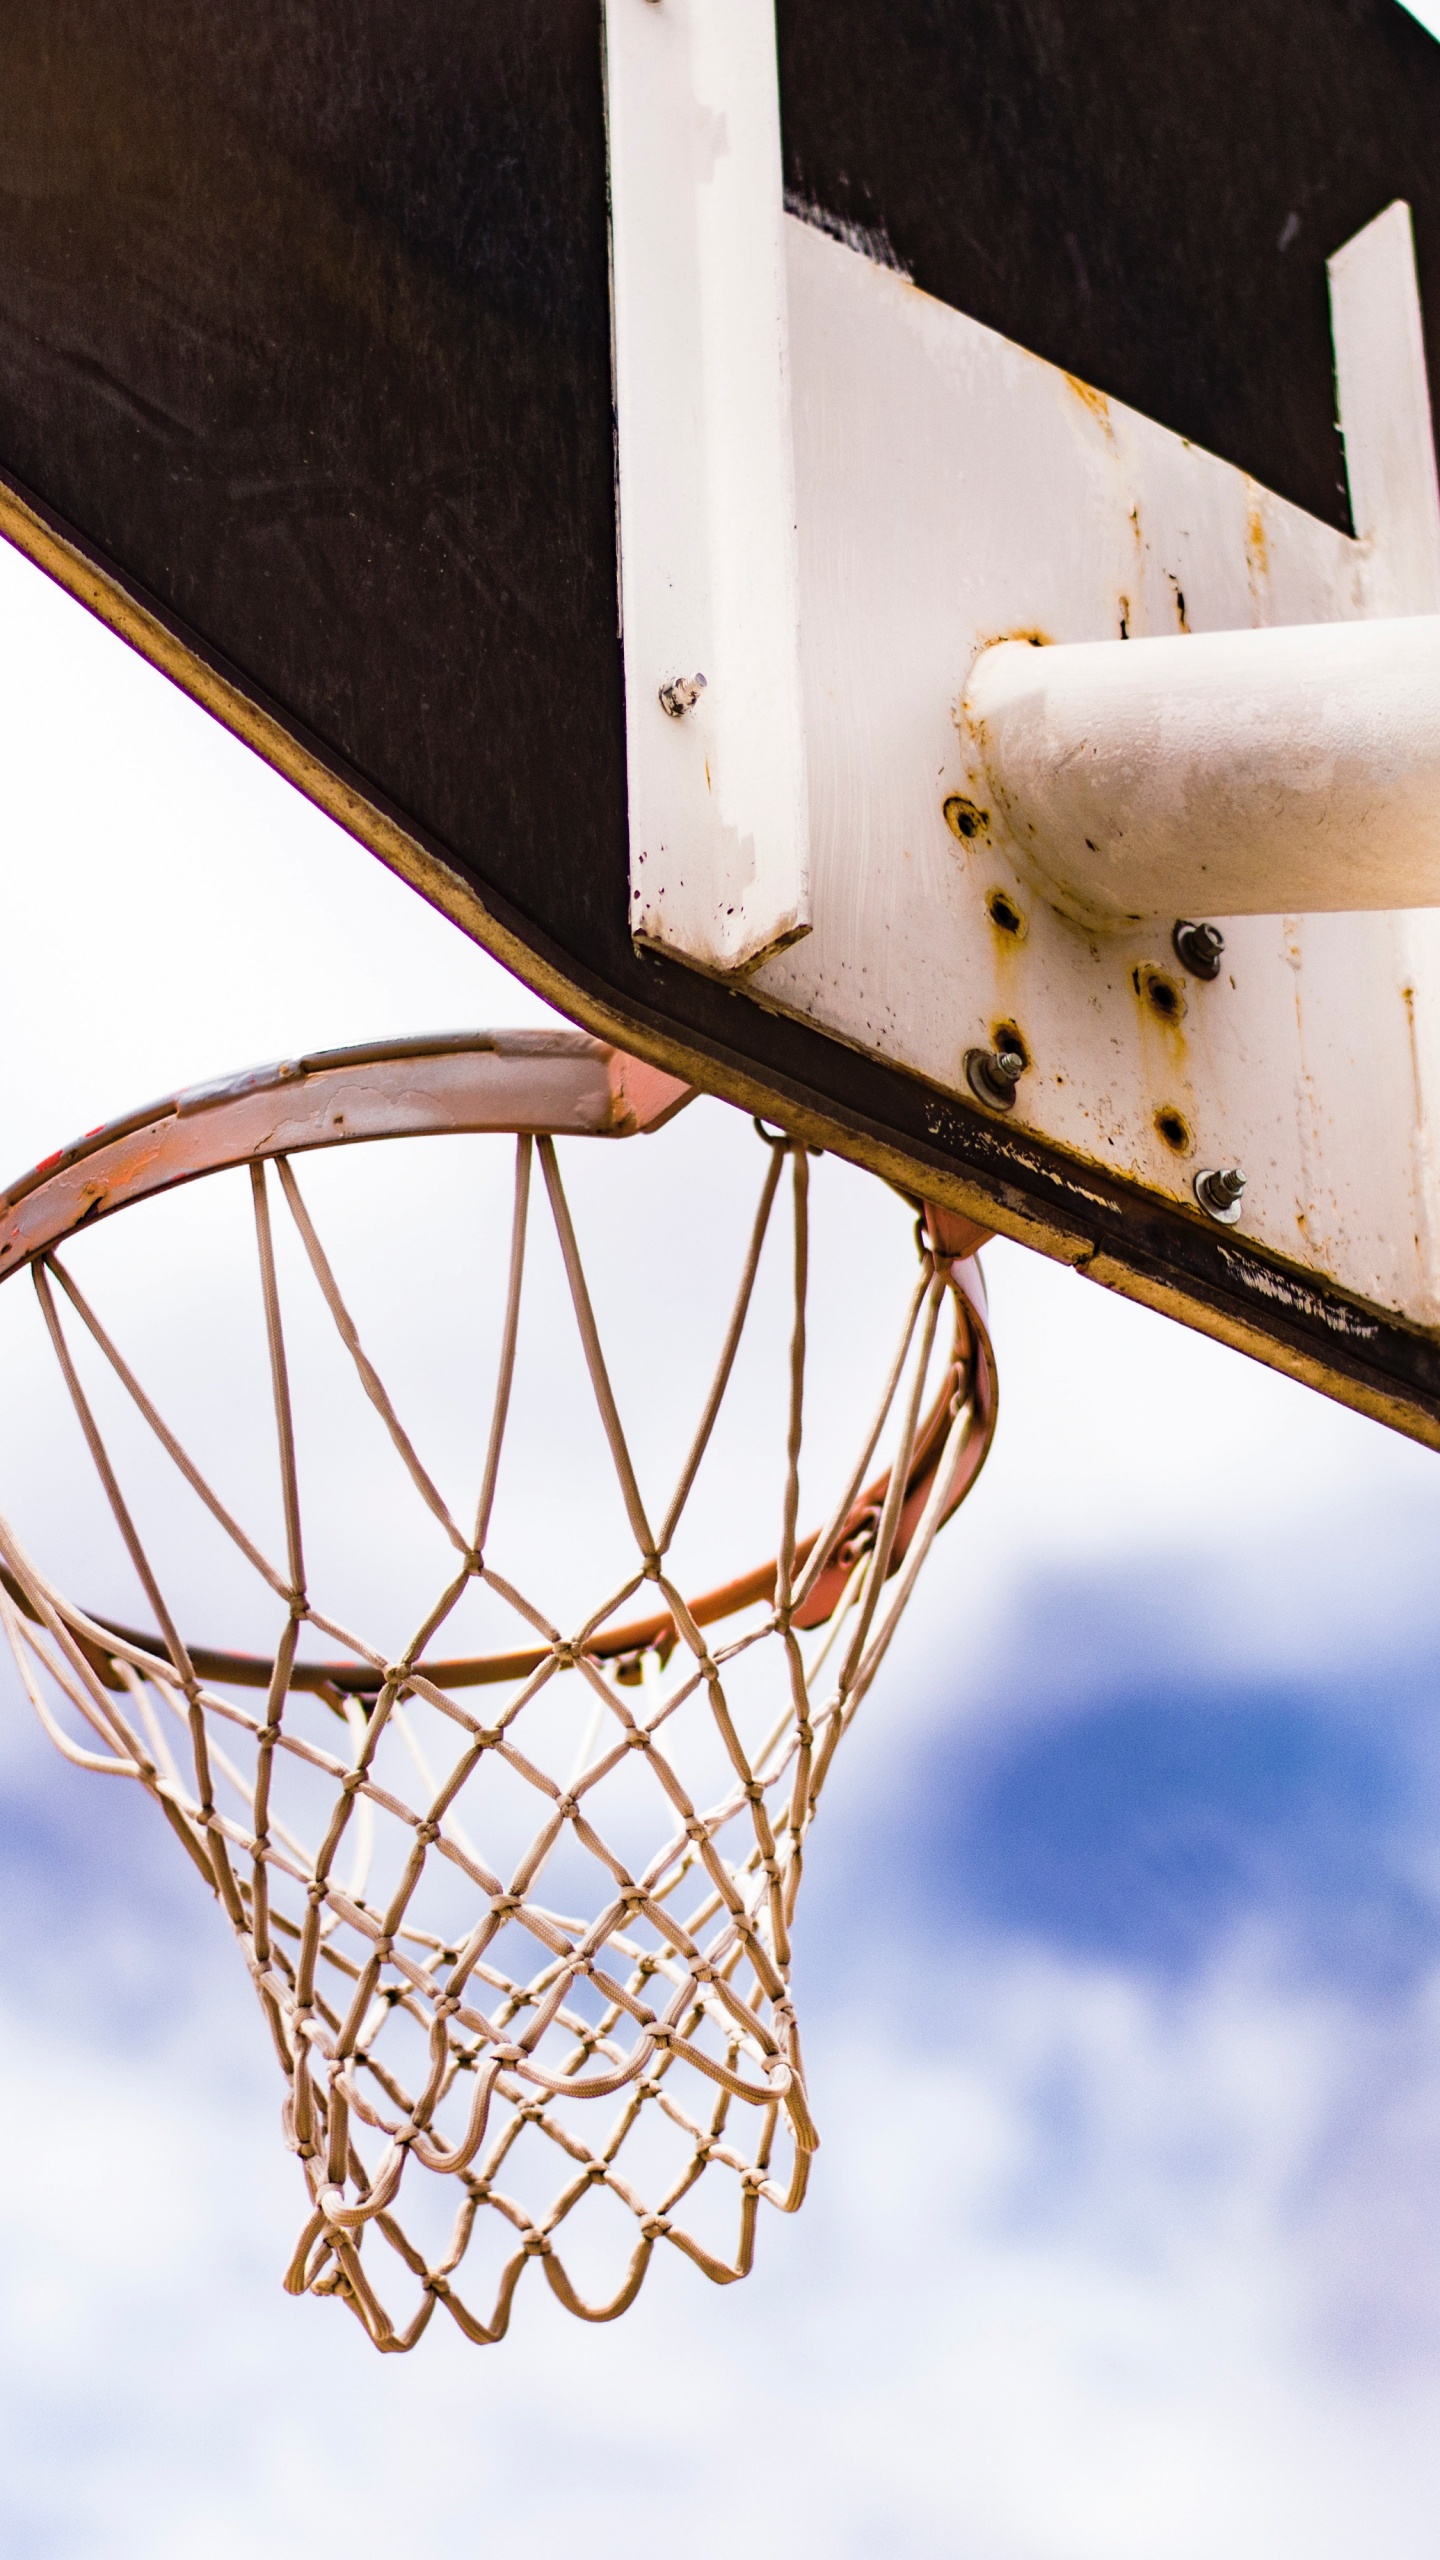 篮球, 篮球场, 街头, 团队运动, 球游戏 壁纸 1440x2560 允许